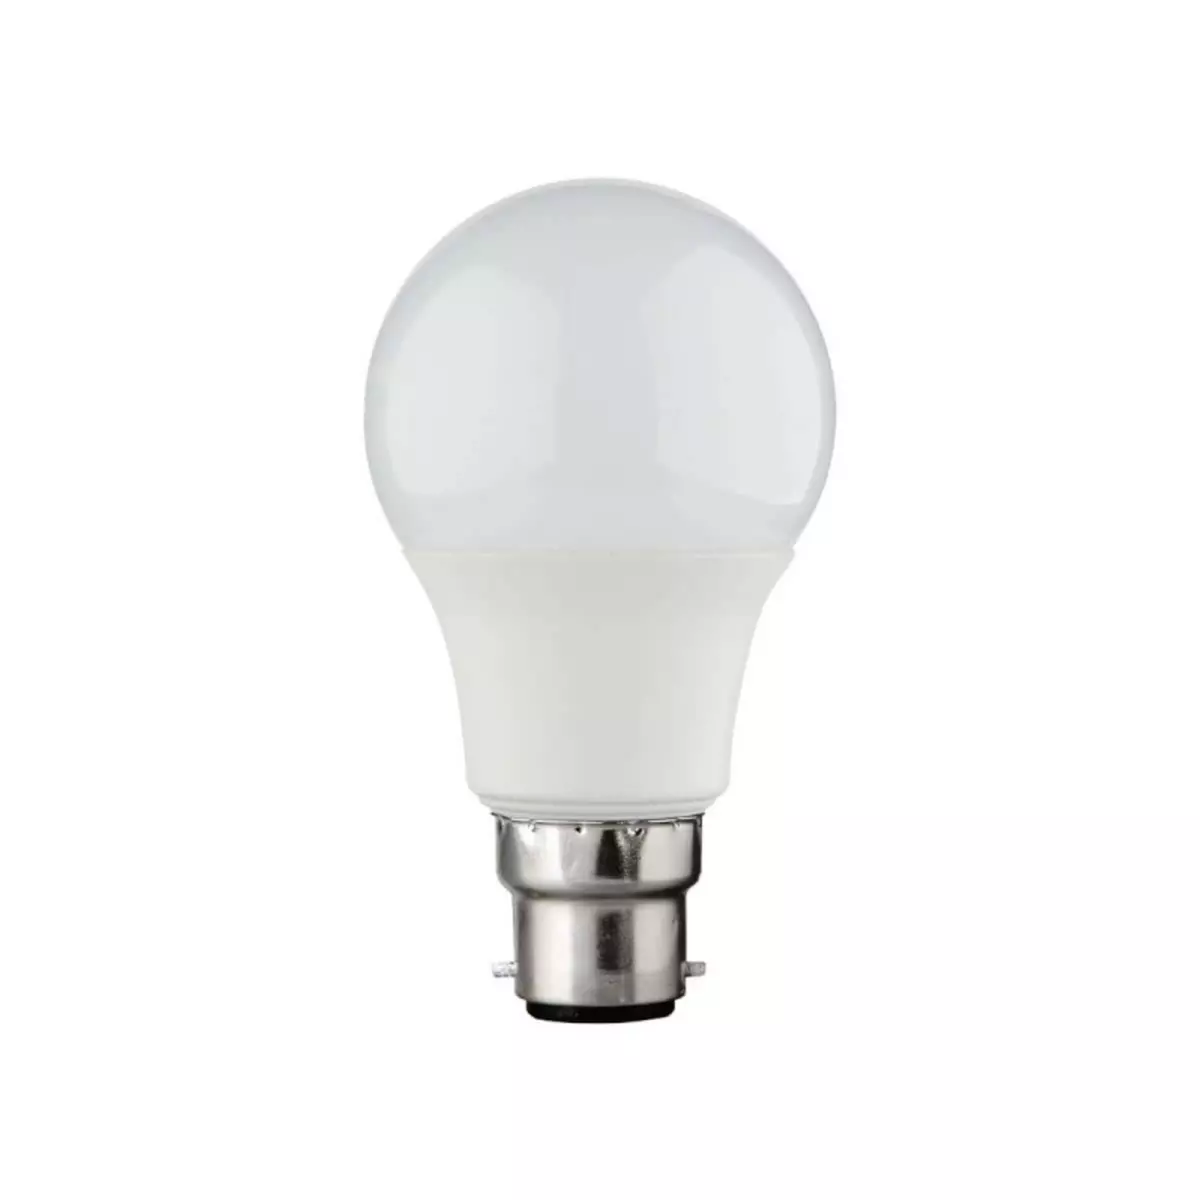  Ampoule LED XXCELL standard - B22 Baionnette équivalent 60W